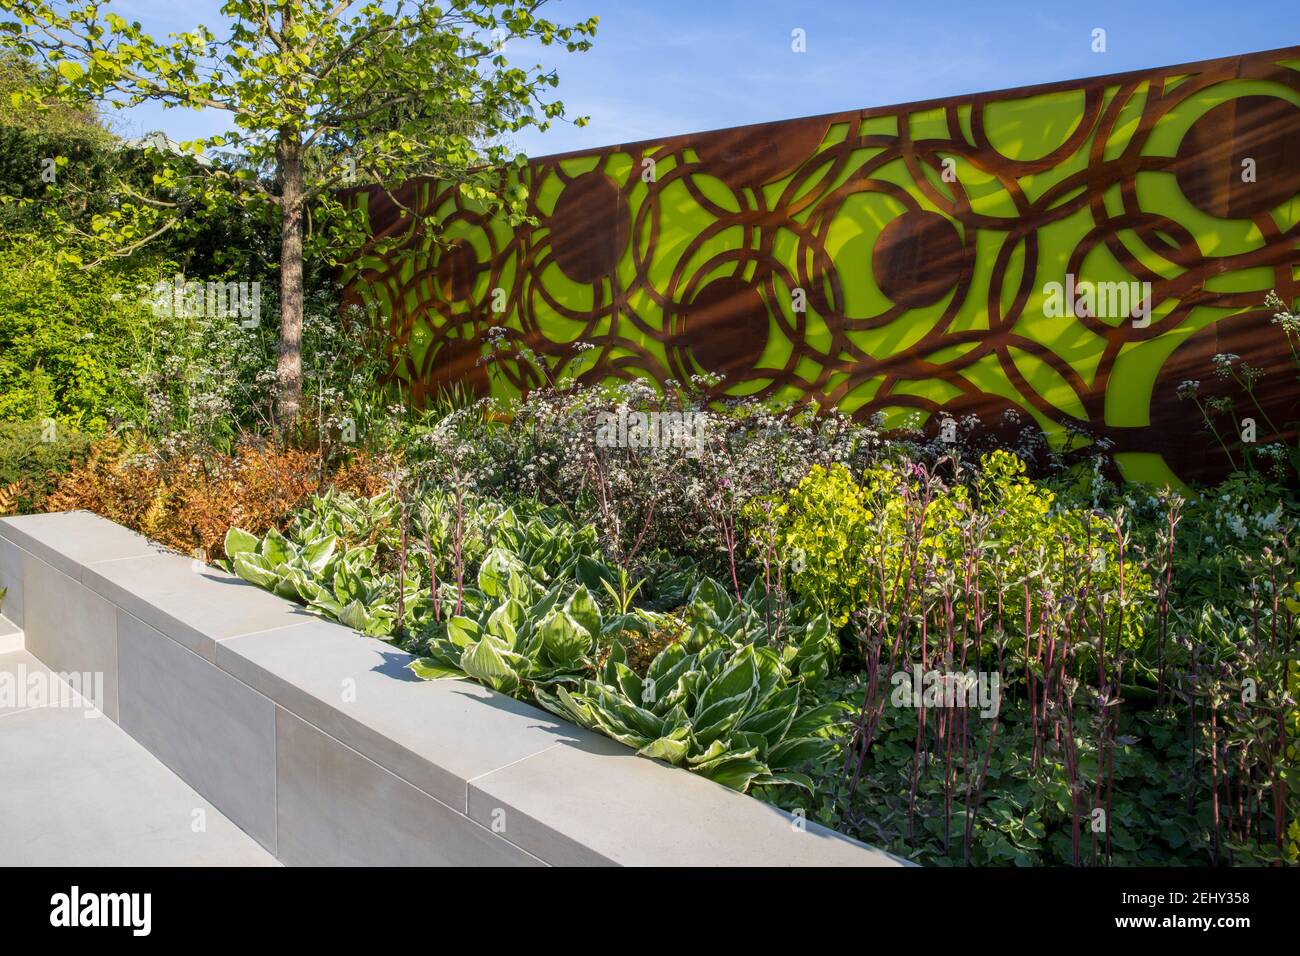 Eine moderne städtische Garten Zaun Paneele und eine Steinbank - Frühling - Hochbetten Blume Grenze blauen Himmel - Corylus colurna - Türkische Hasel Baum - Großbritannien Stockfoto